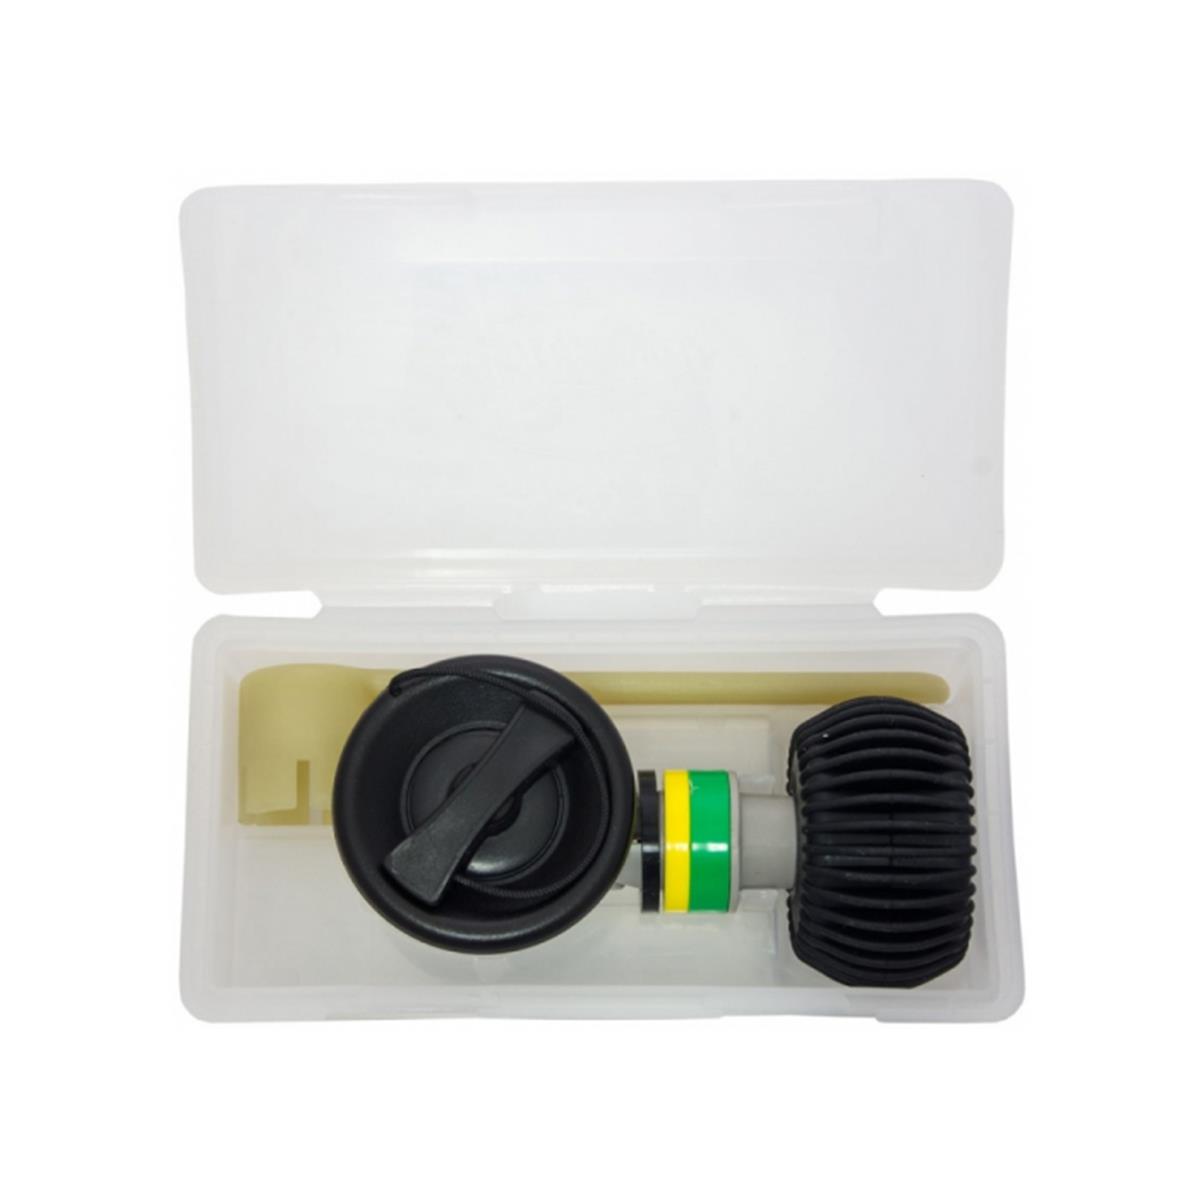 Сервисный набор ЗИП с черным клапаном BRAVO (R551051) набор для демонтажа сальников двигателей vag aist